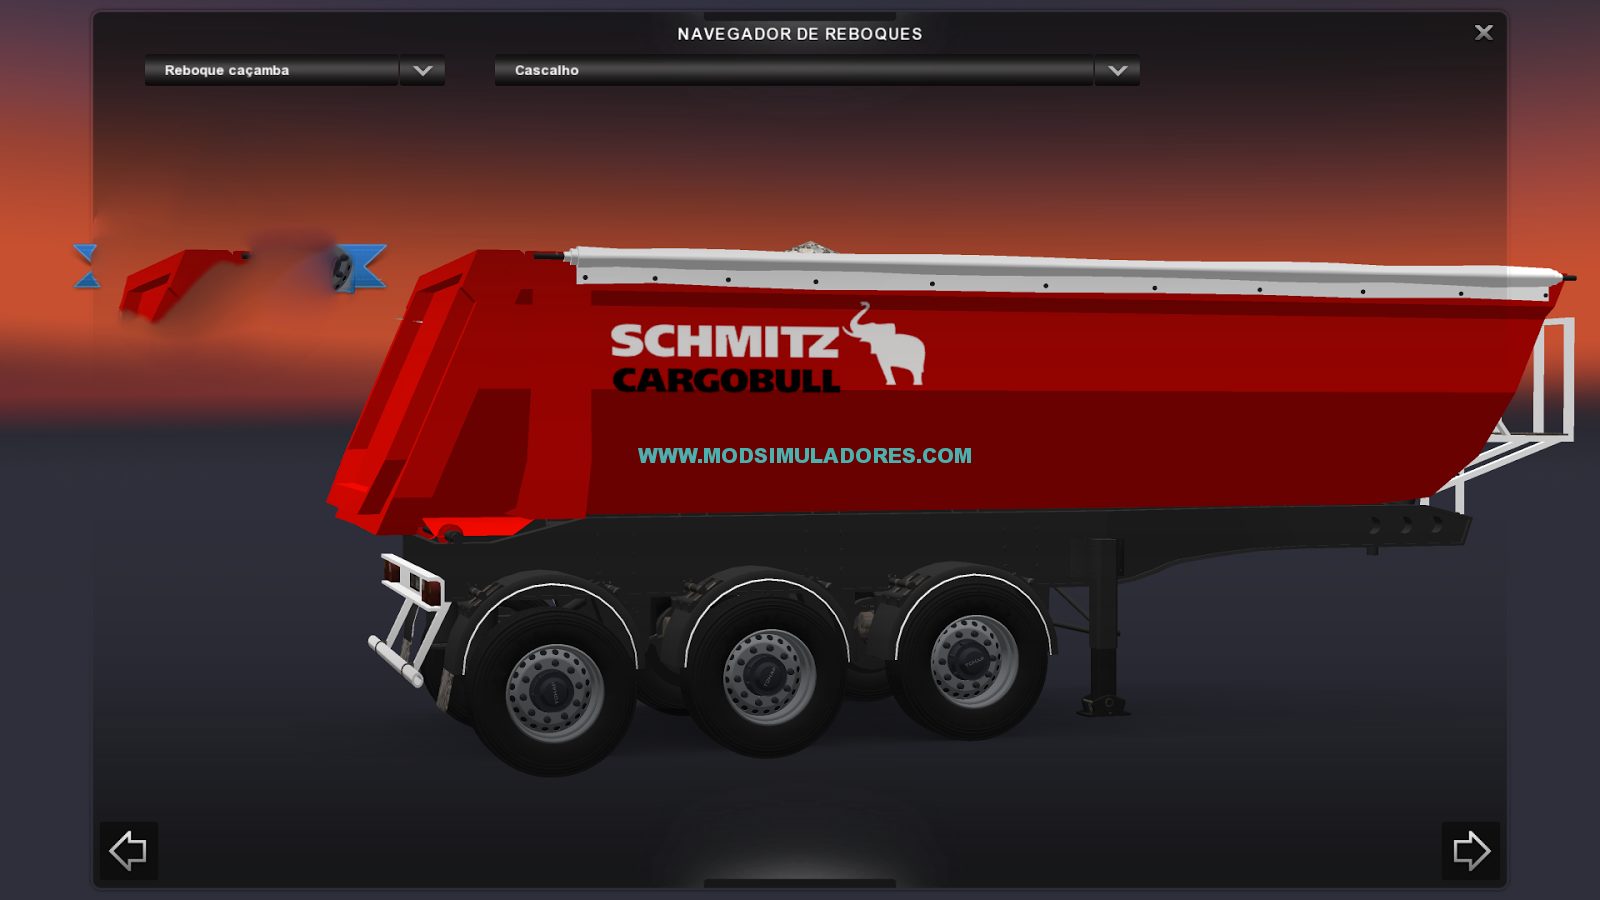 Caçamba Schmitz CargoBull Para ETS2